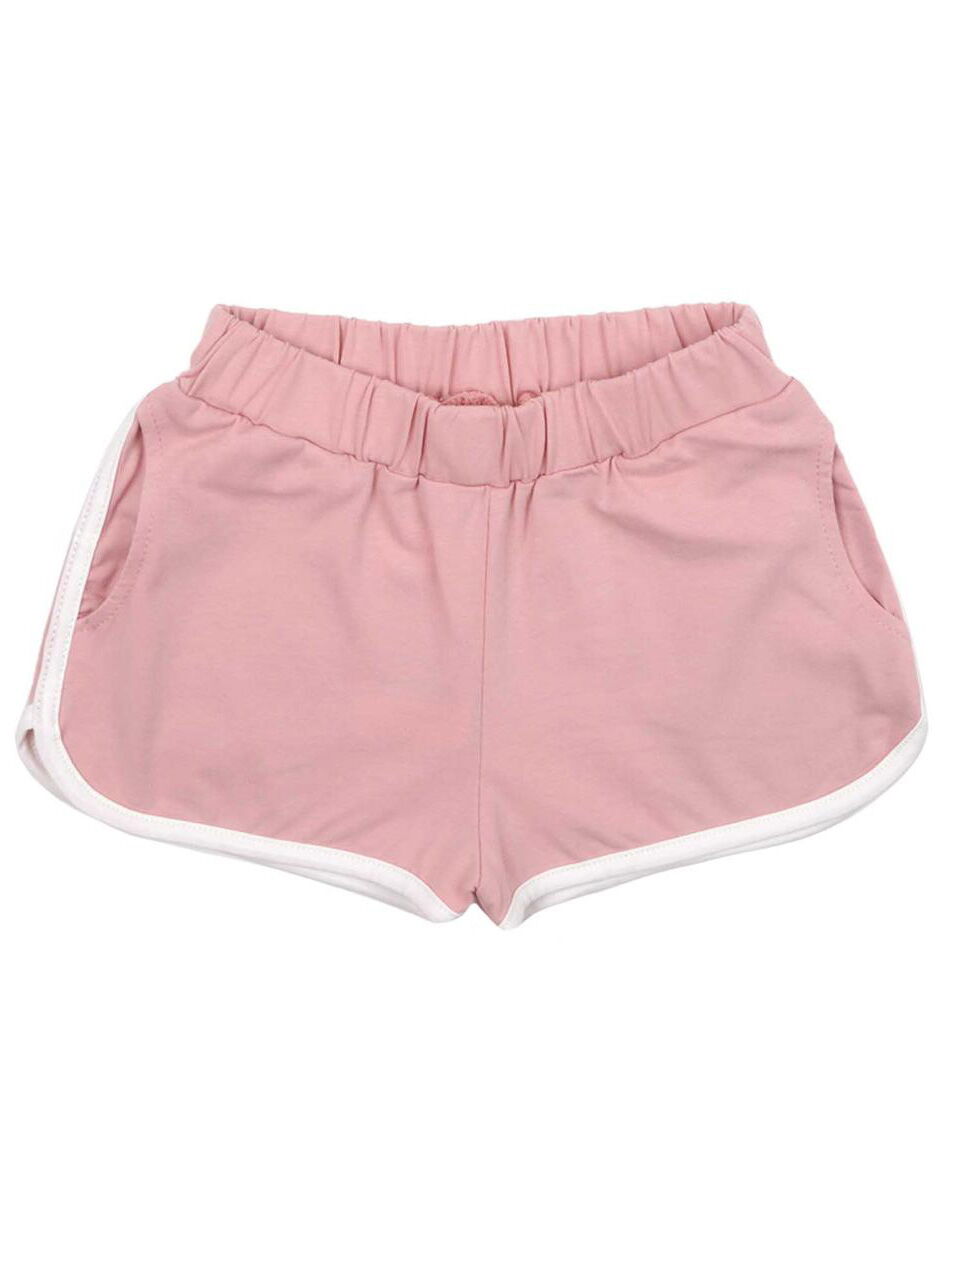 Летние шорты для девочки Фламинго розовые 786-416 - цена